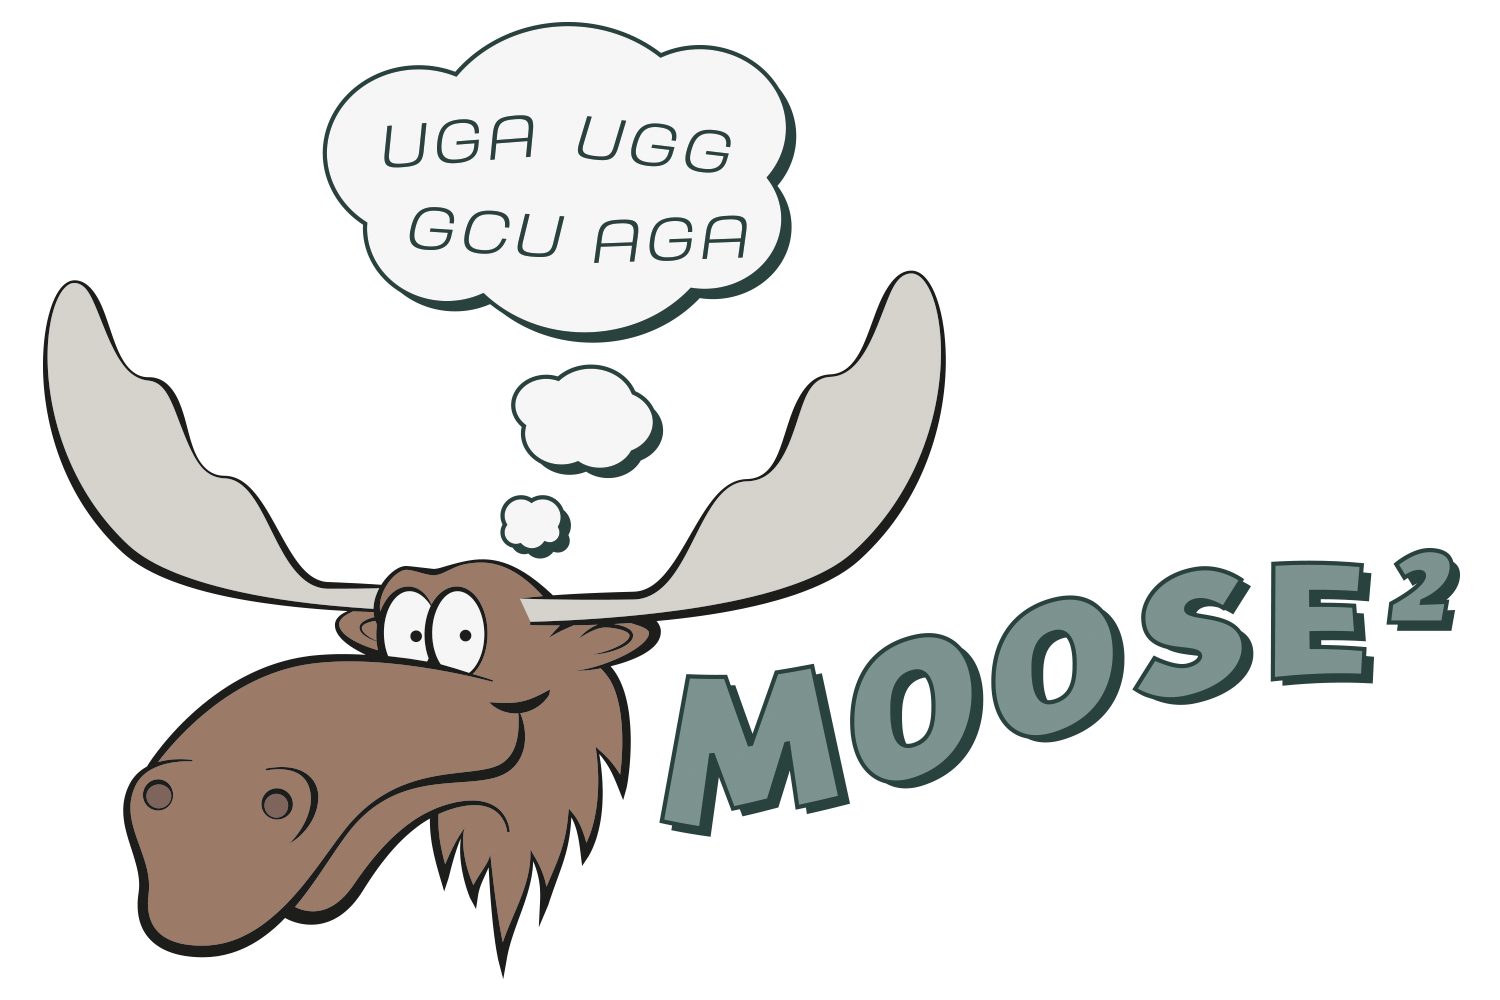 MOOSE2 Logo